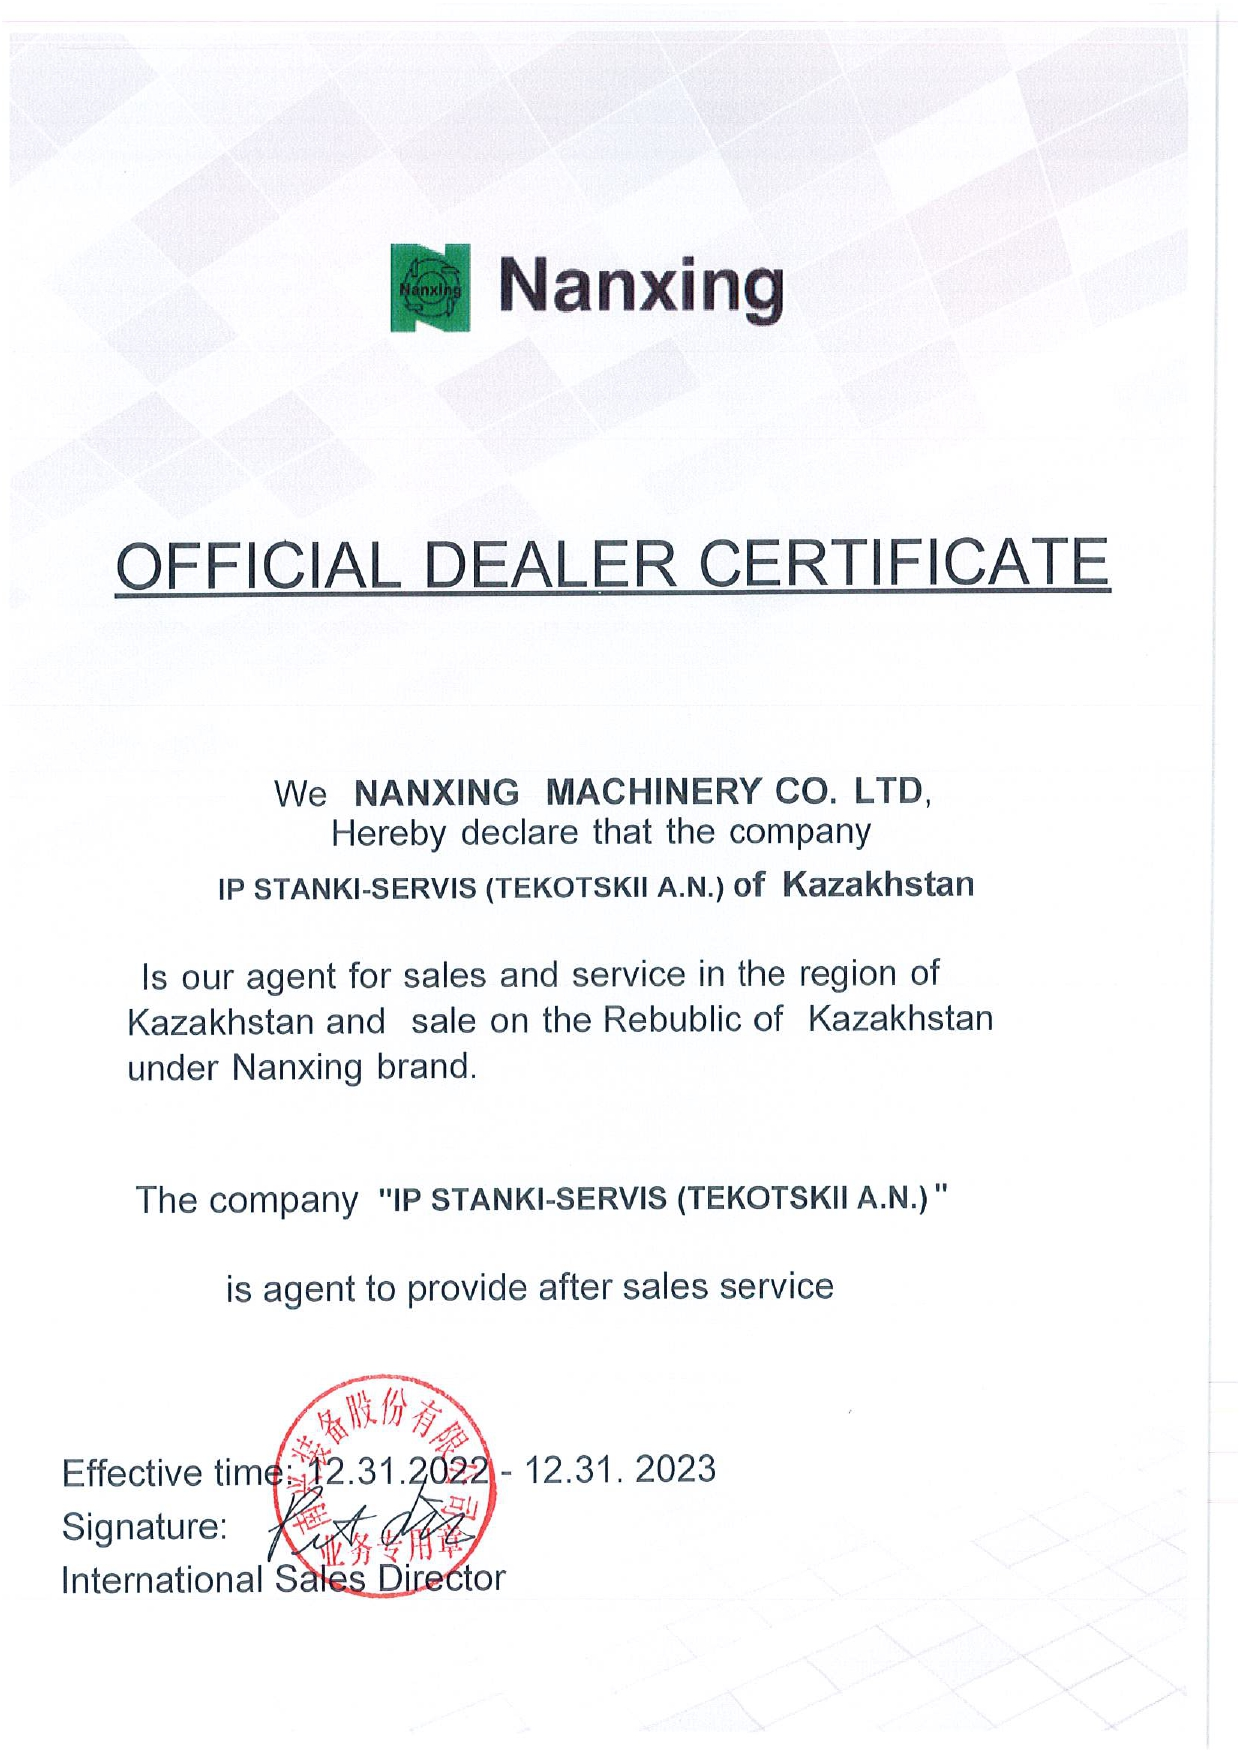 Сертификат официального дилера Nanxing на территории Республики Казахстан